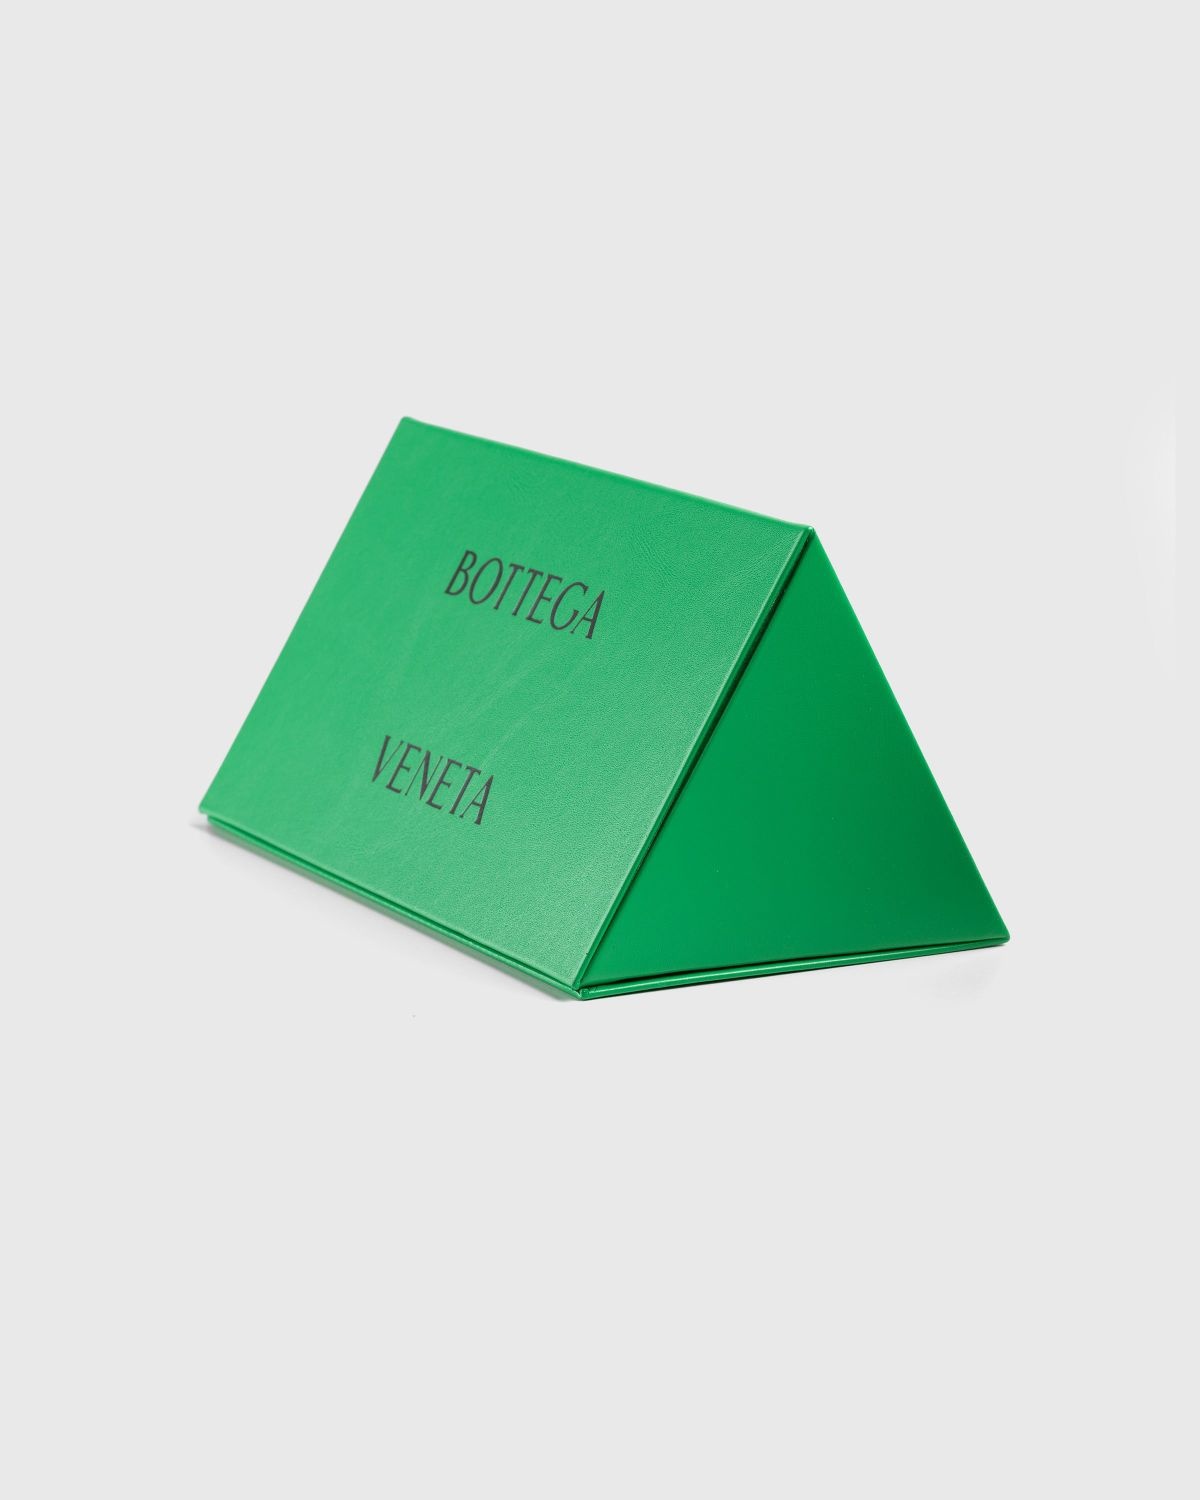 Bottega Veneta – Classic Square Sunglasses Green/Green - 6